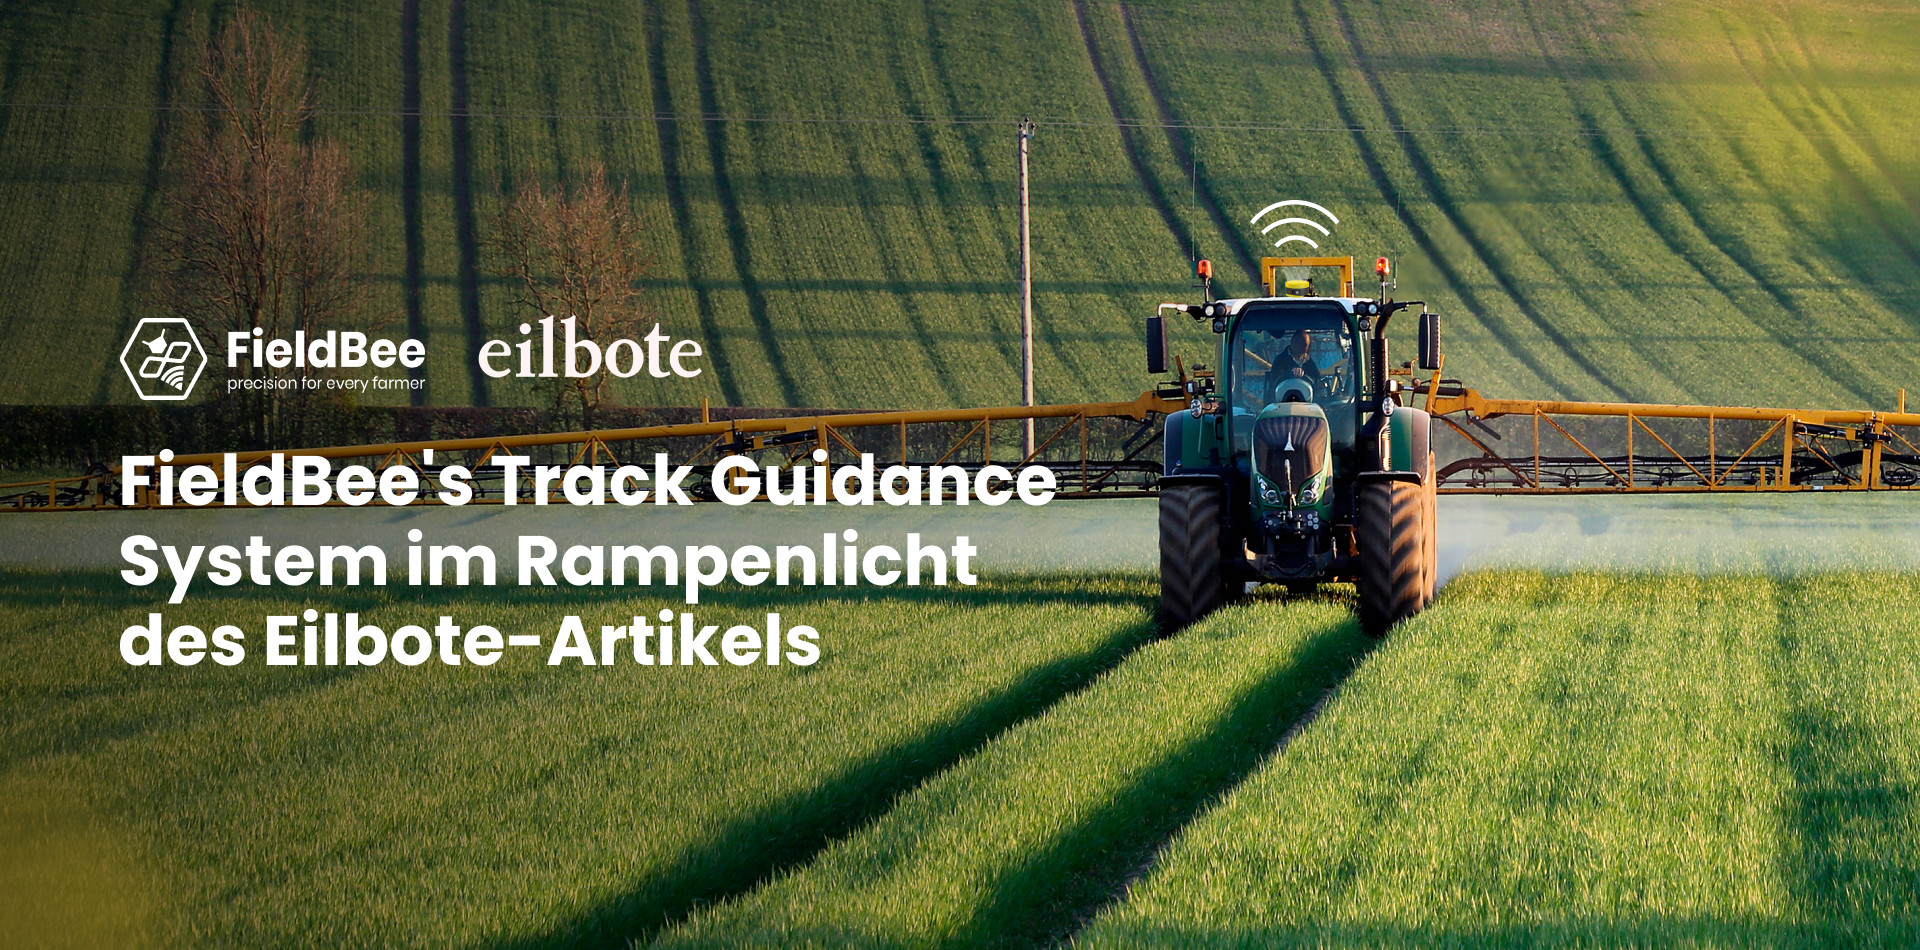 FieldBee's Track Guidance System im Rampenlicht des Eilbote-Artikels